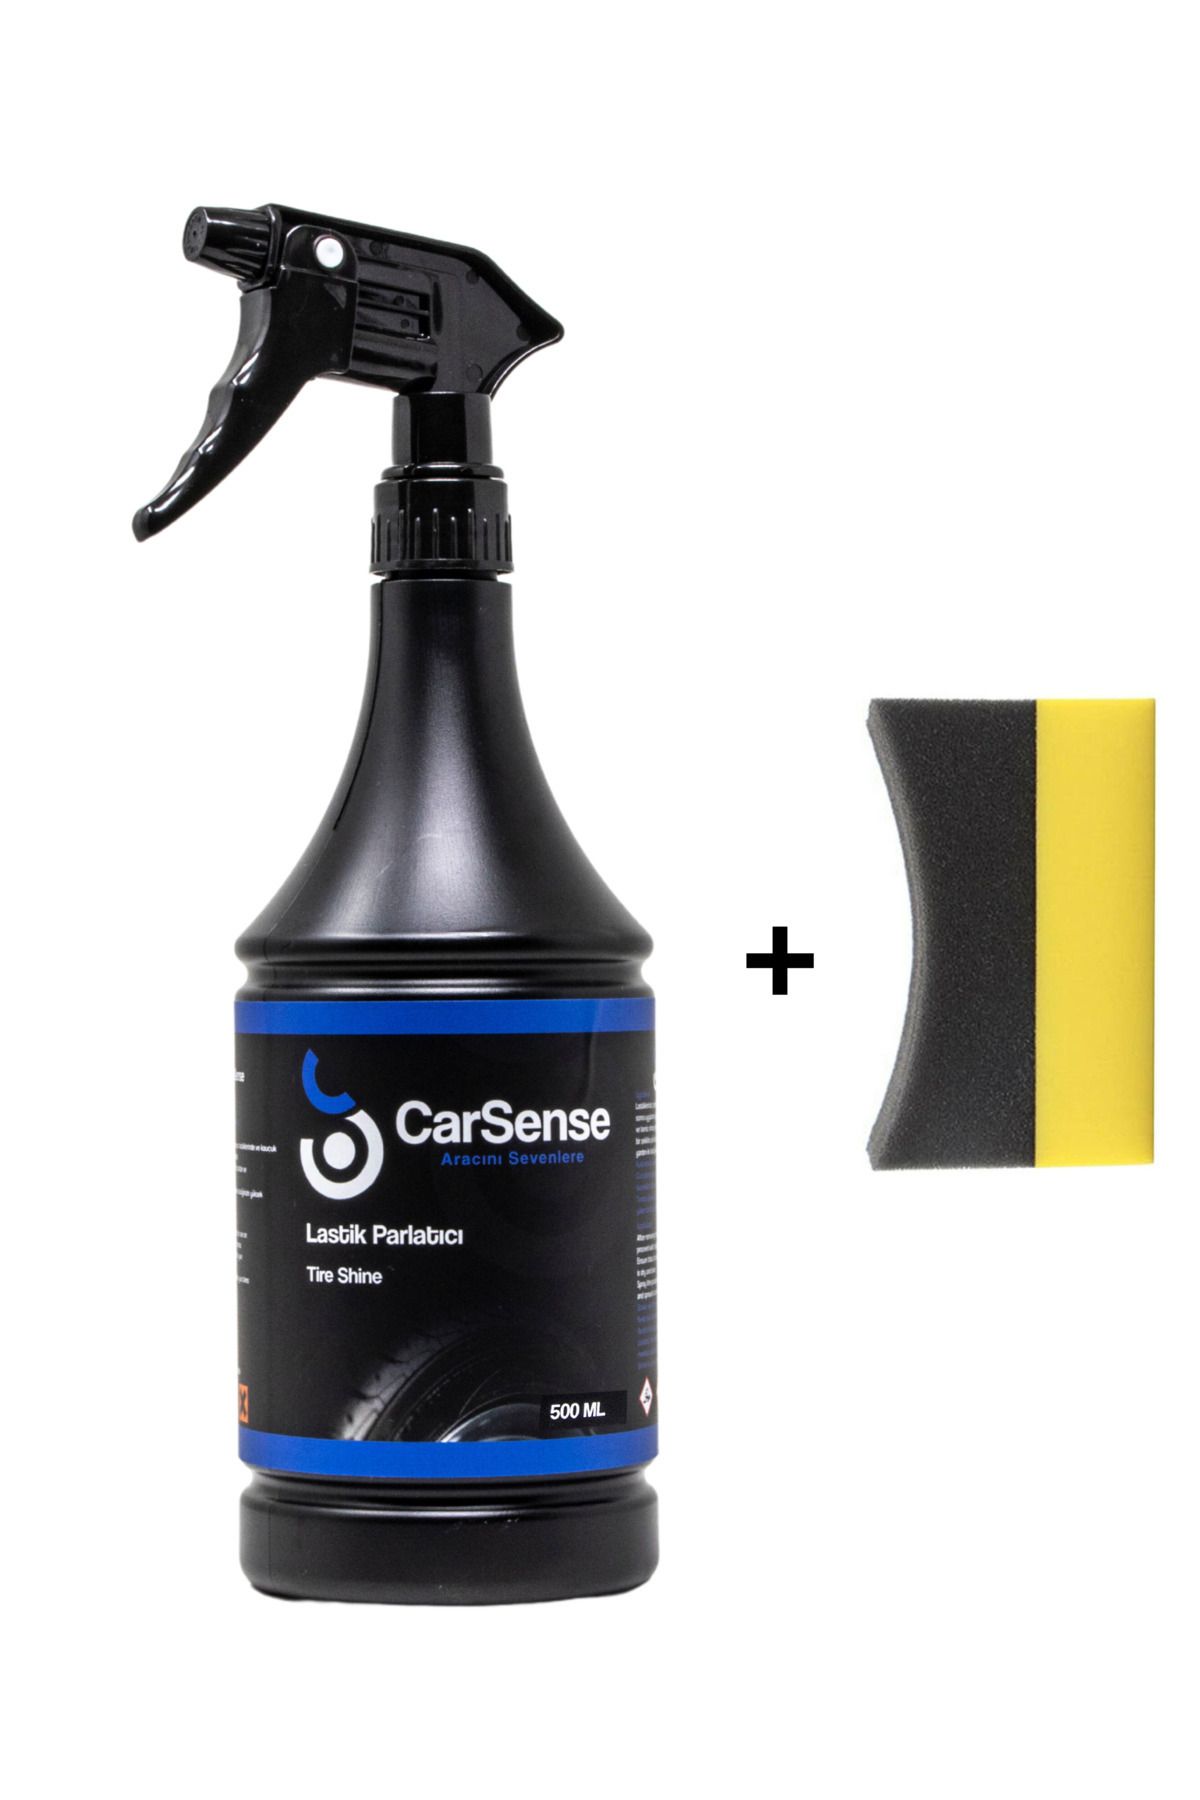 CarSense Lastik Parlatıcı ve Koruyucu 500 ml + Parlatma Süngeri Hediyeli